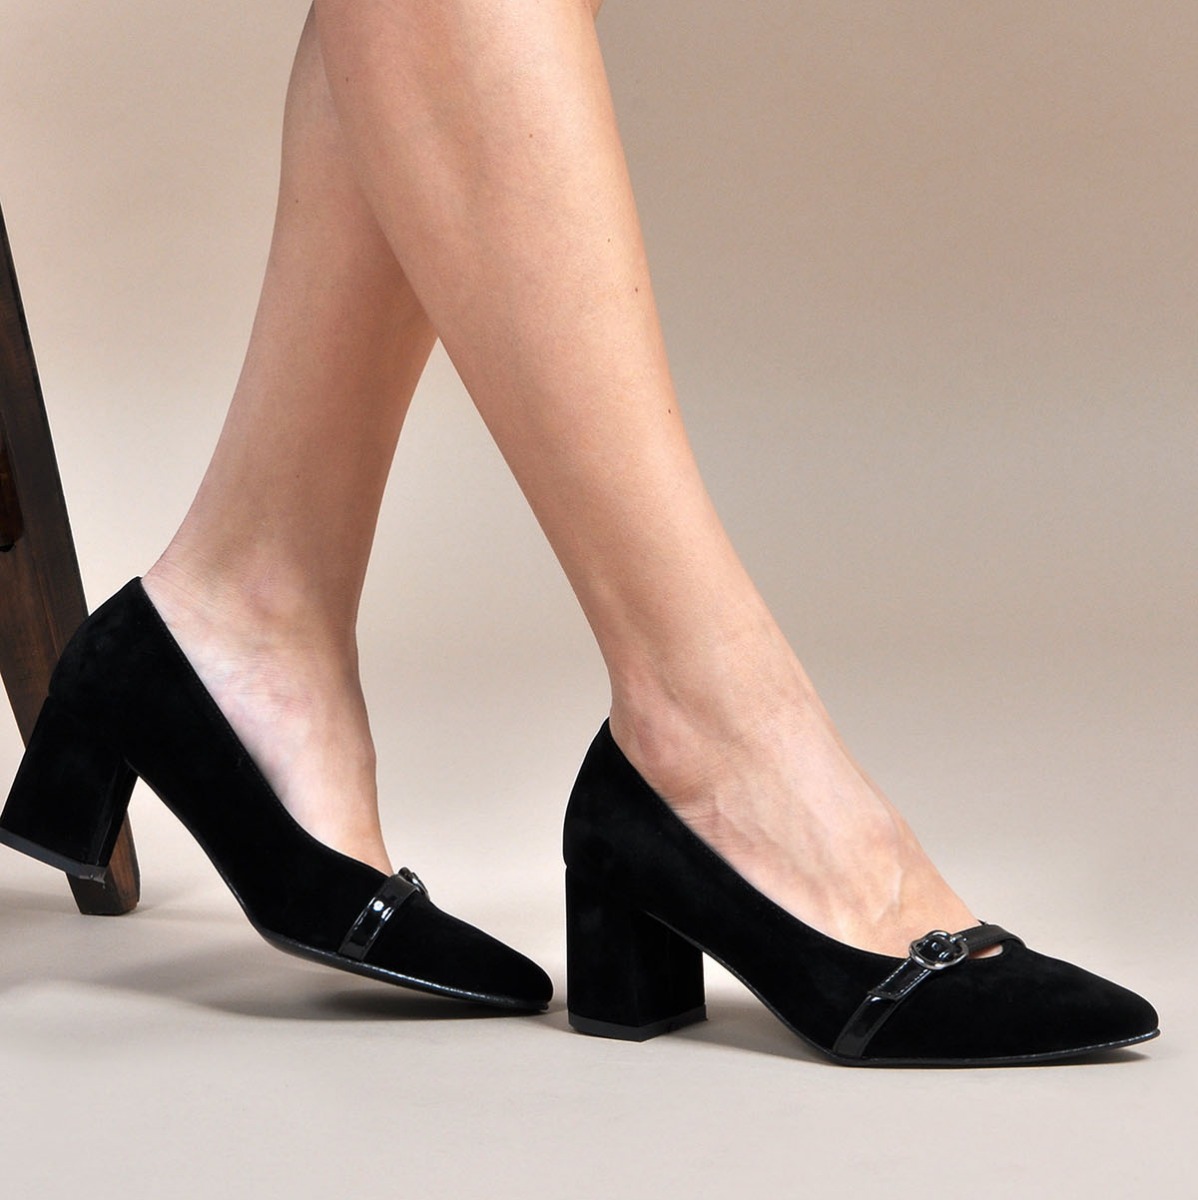 Flo Kadın  Siyah-Süet Klasik Topuklu Ayakkabı VZN19-110K. 1